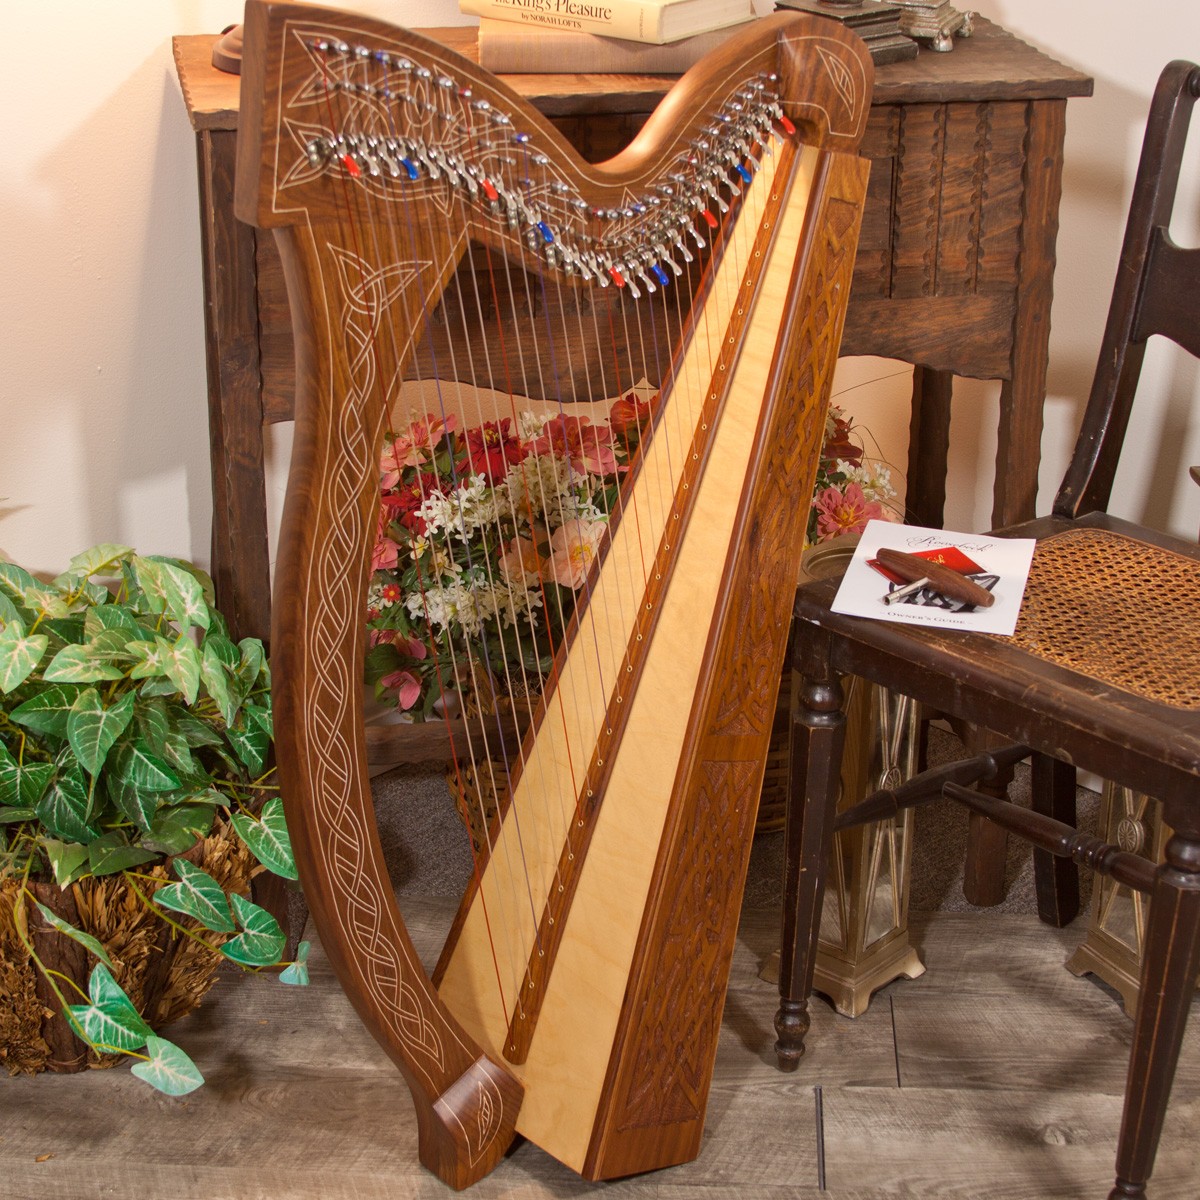 C 29 Roosebeck Harp String Set C